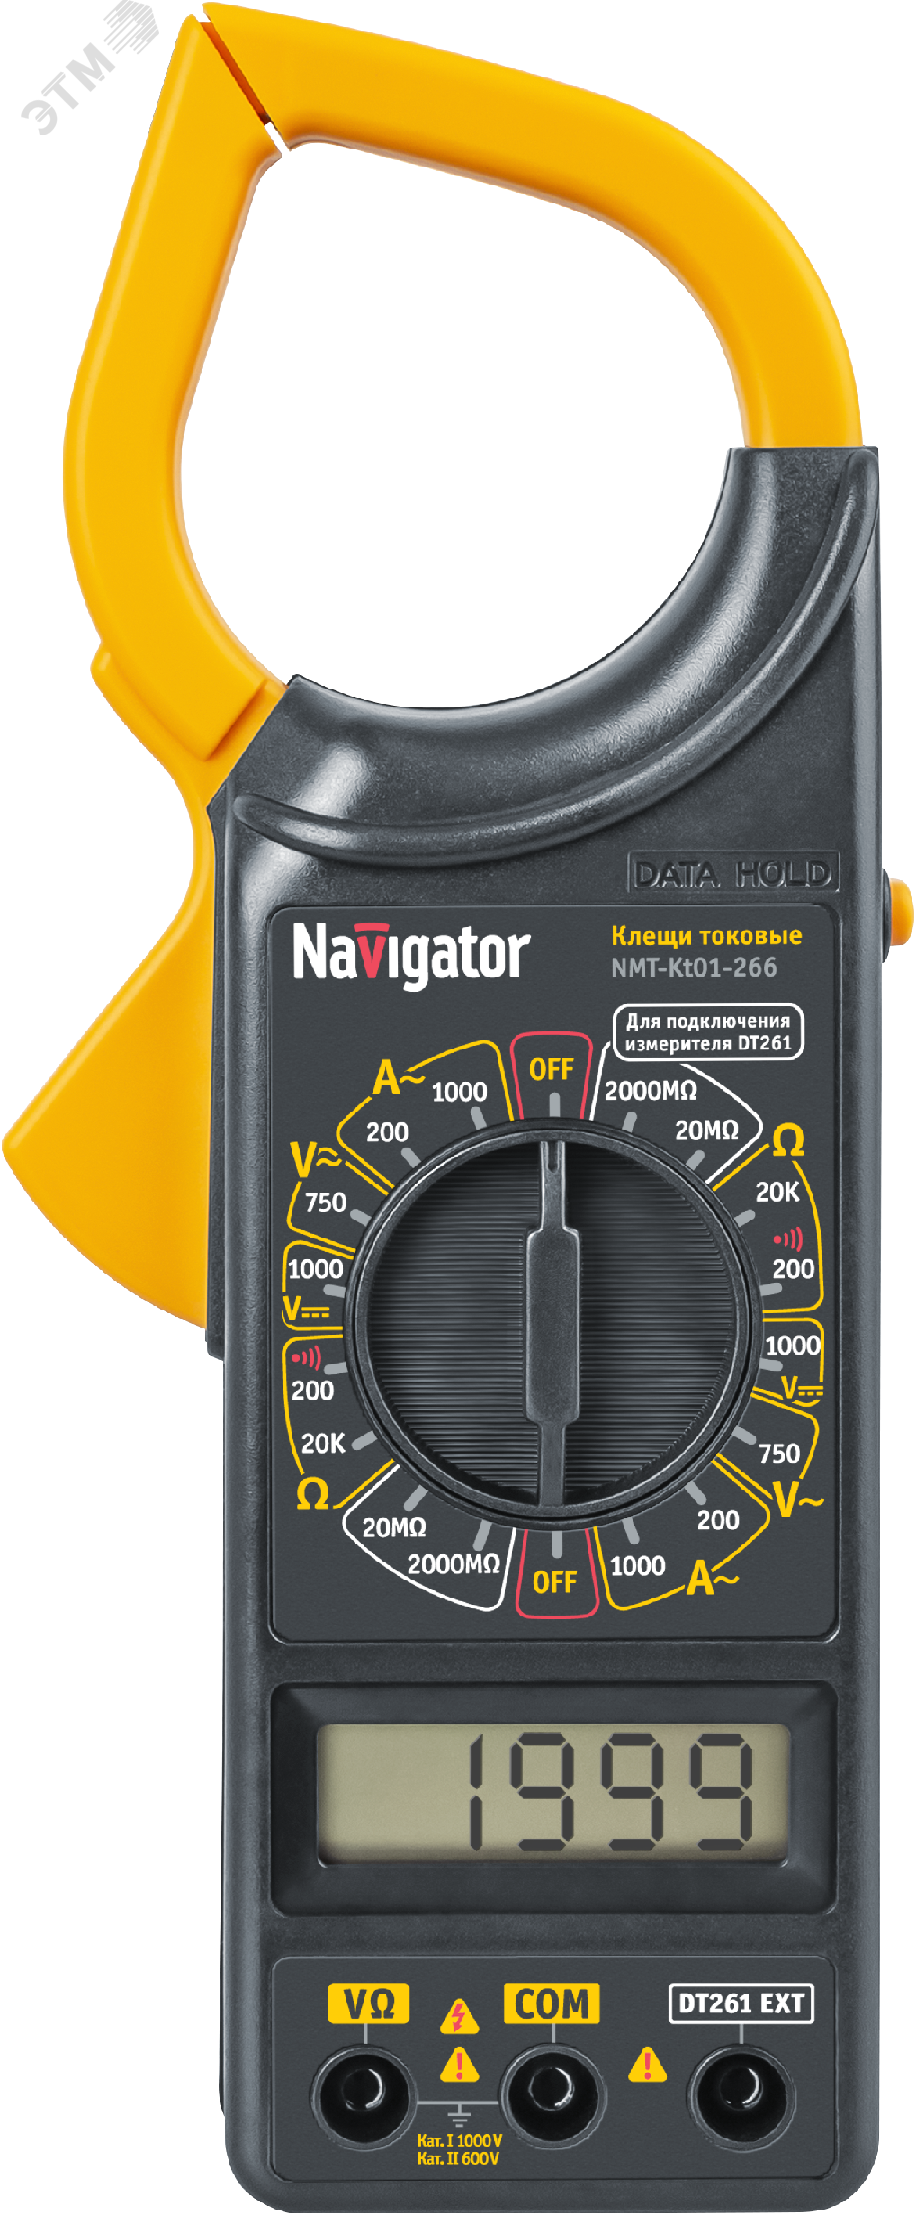 Клещи токовые 80 261 NMT-Kt01-266 (266) 80261 Navigator Group